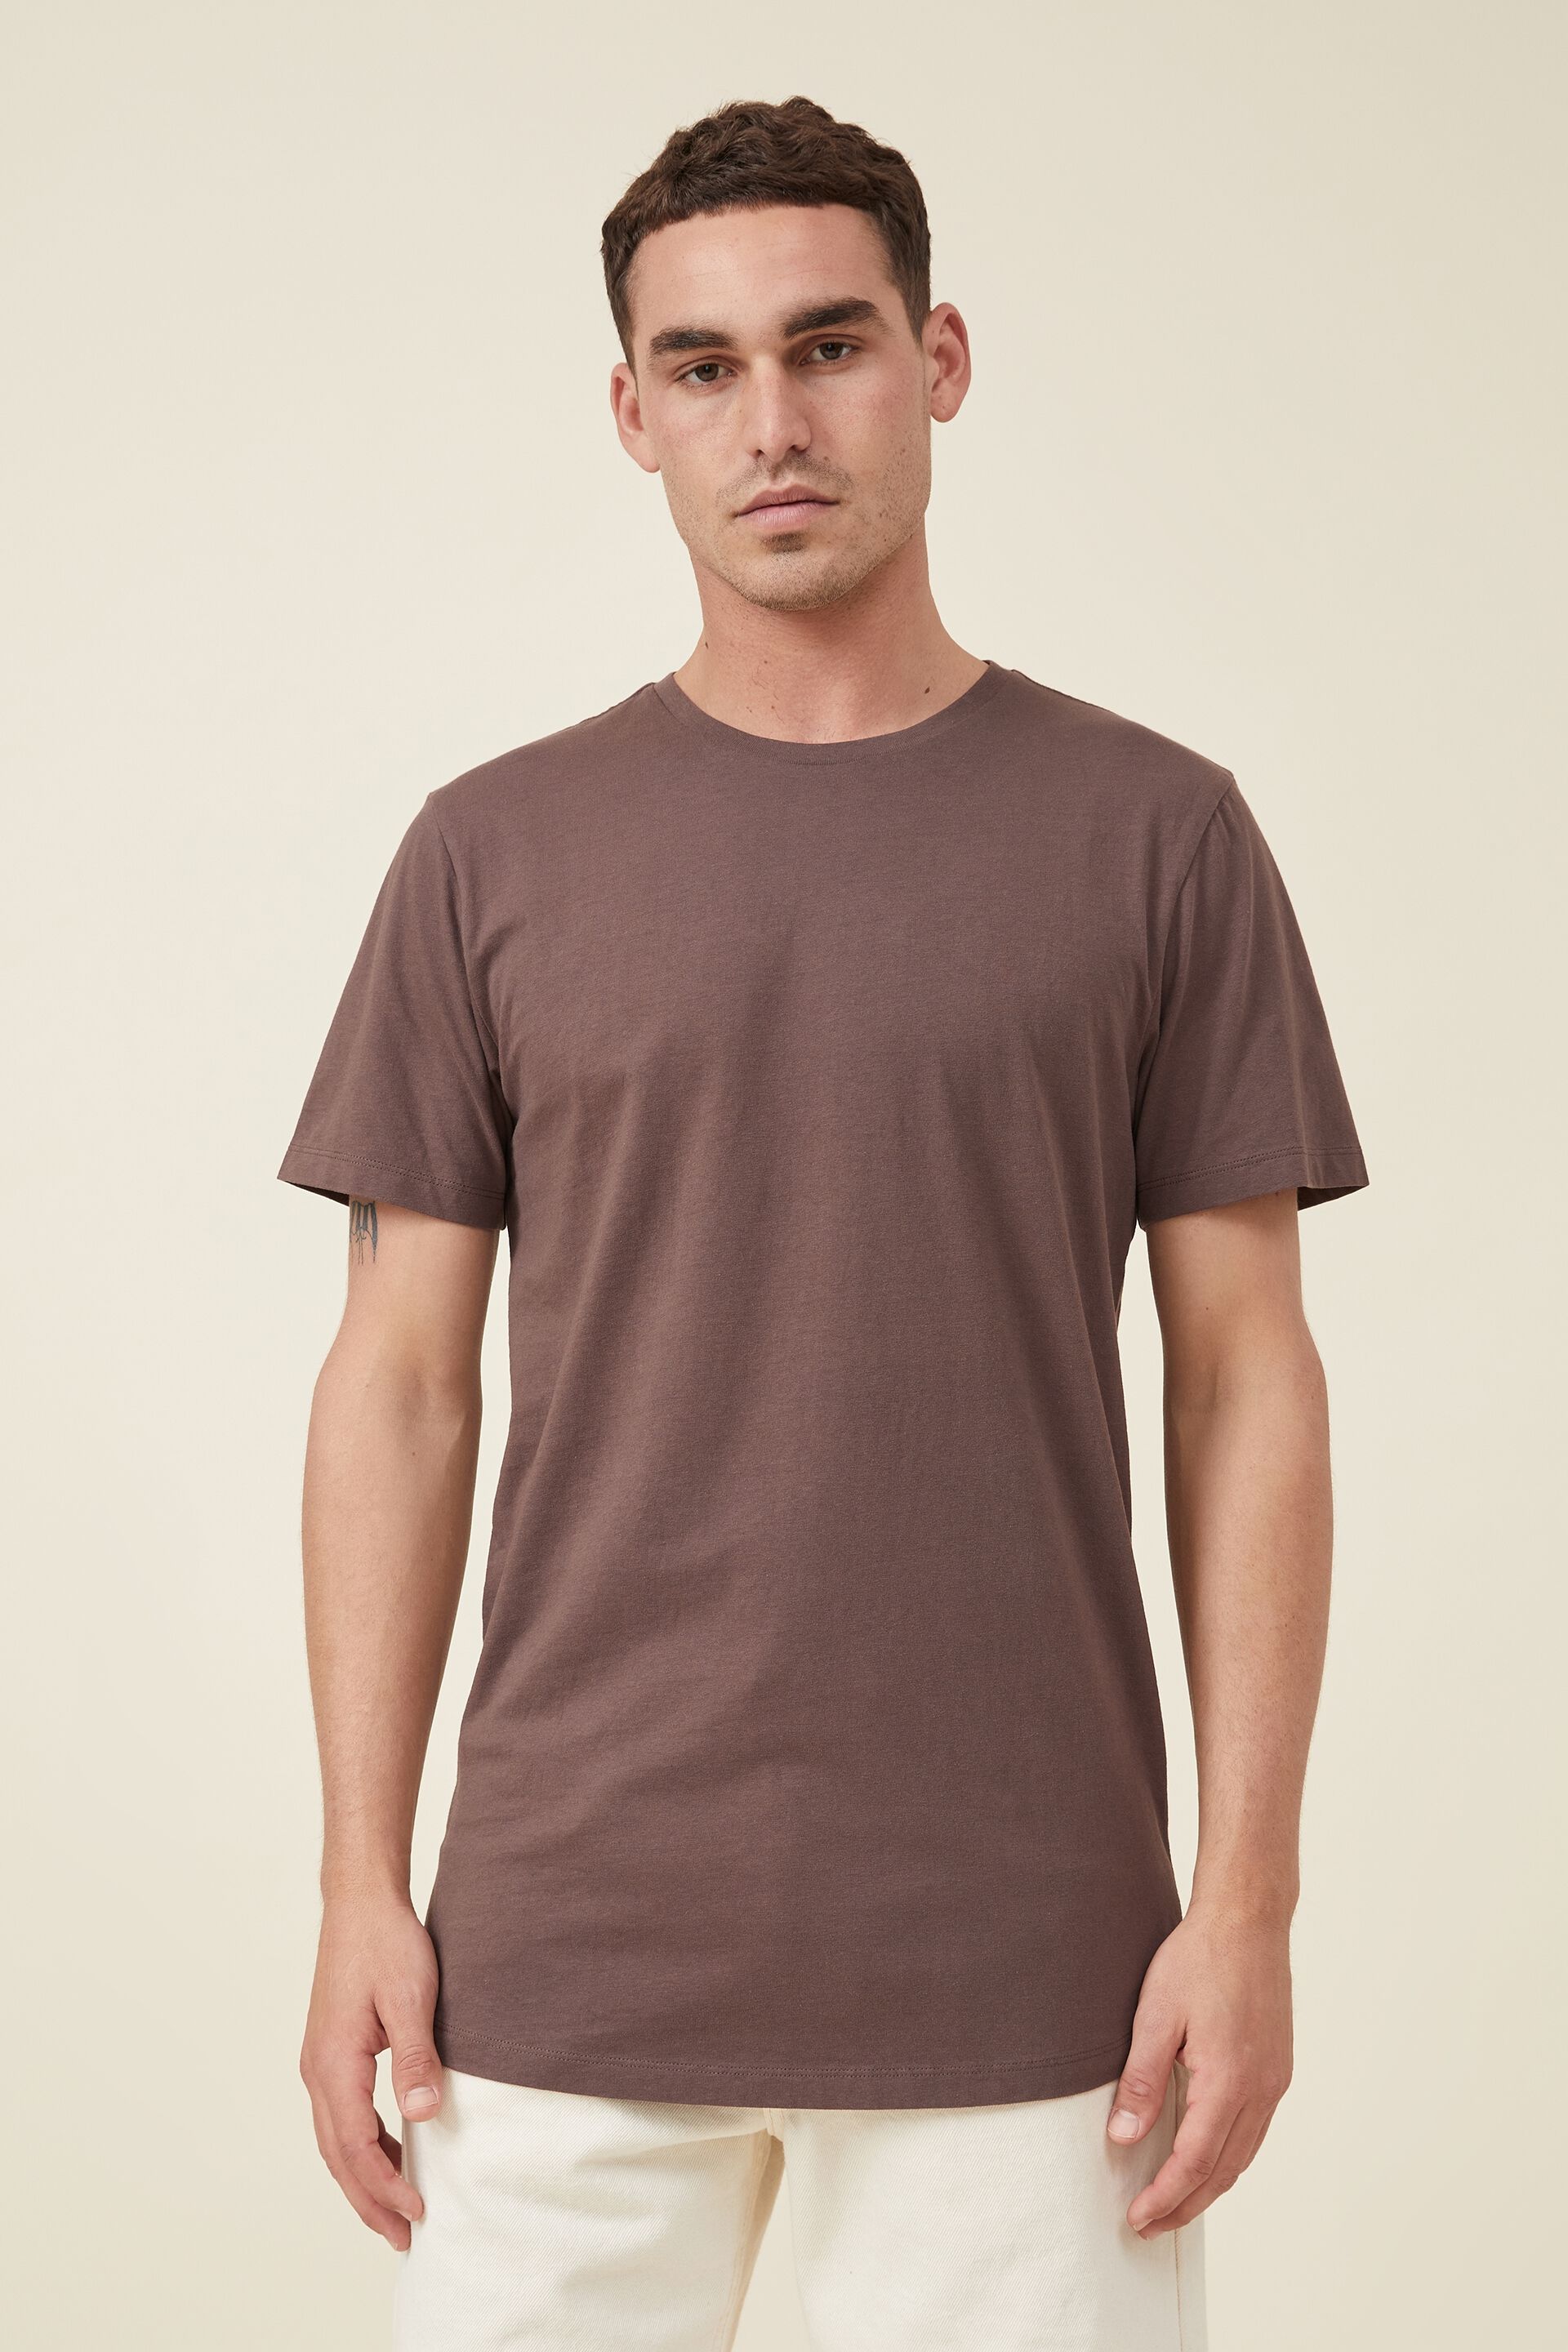 MEN FASHION Shirts & T-shirts Casual discount 88% Brown XXL NoName Shirt 